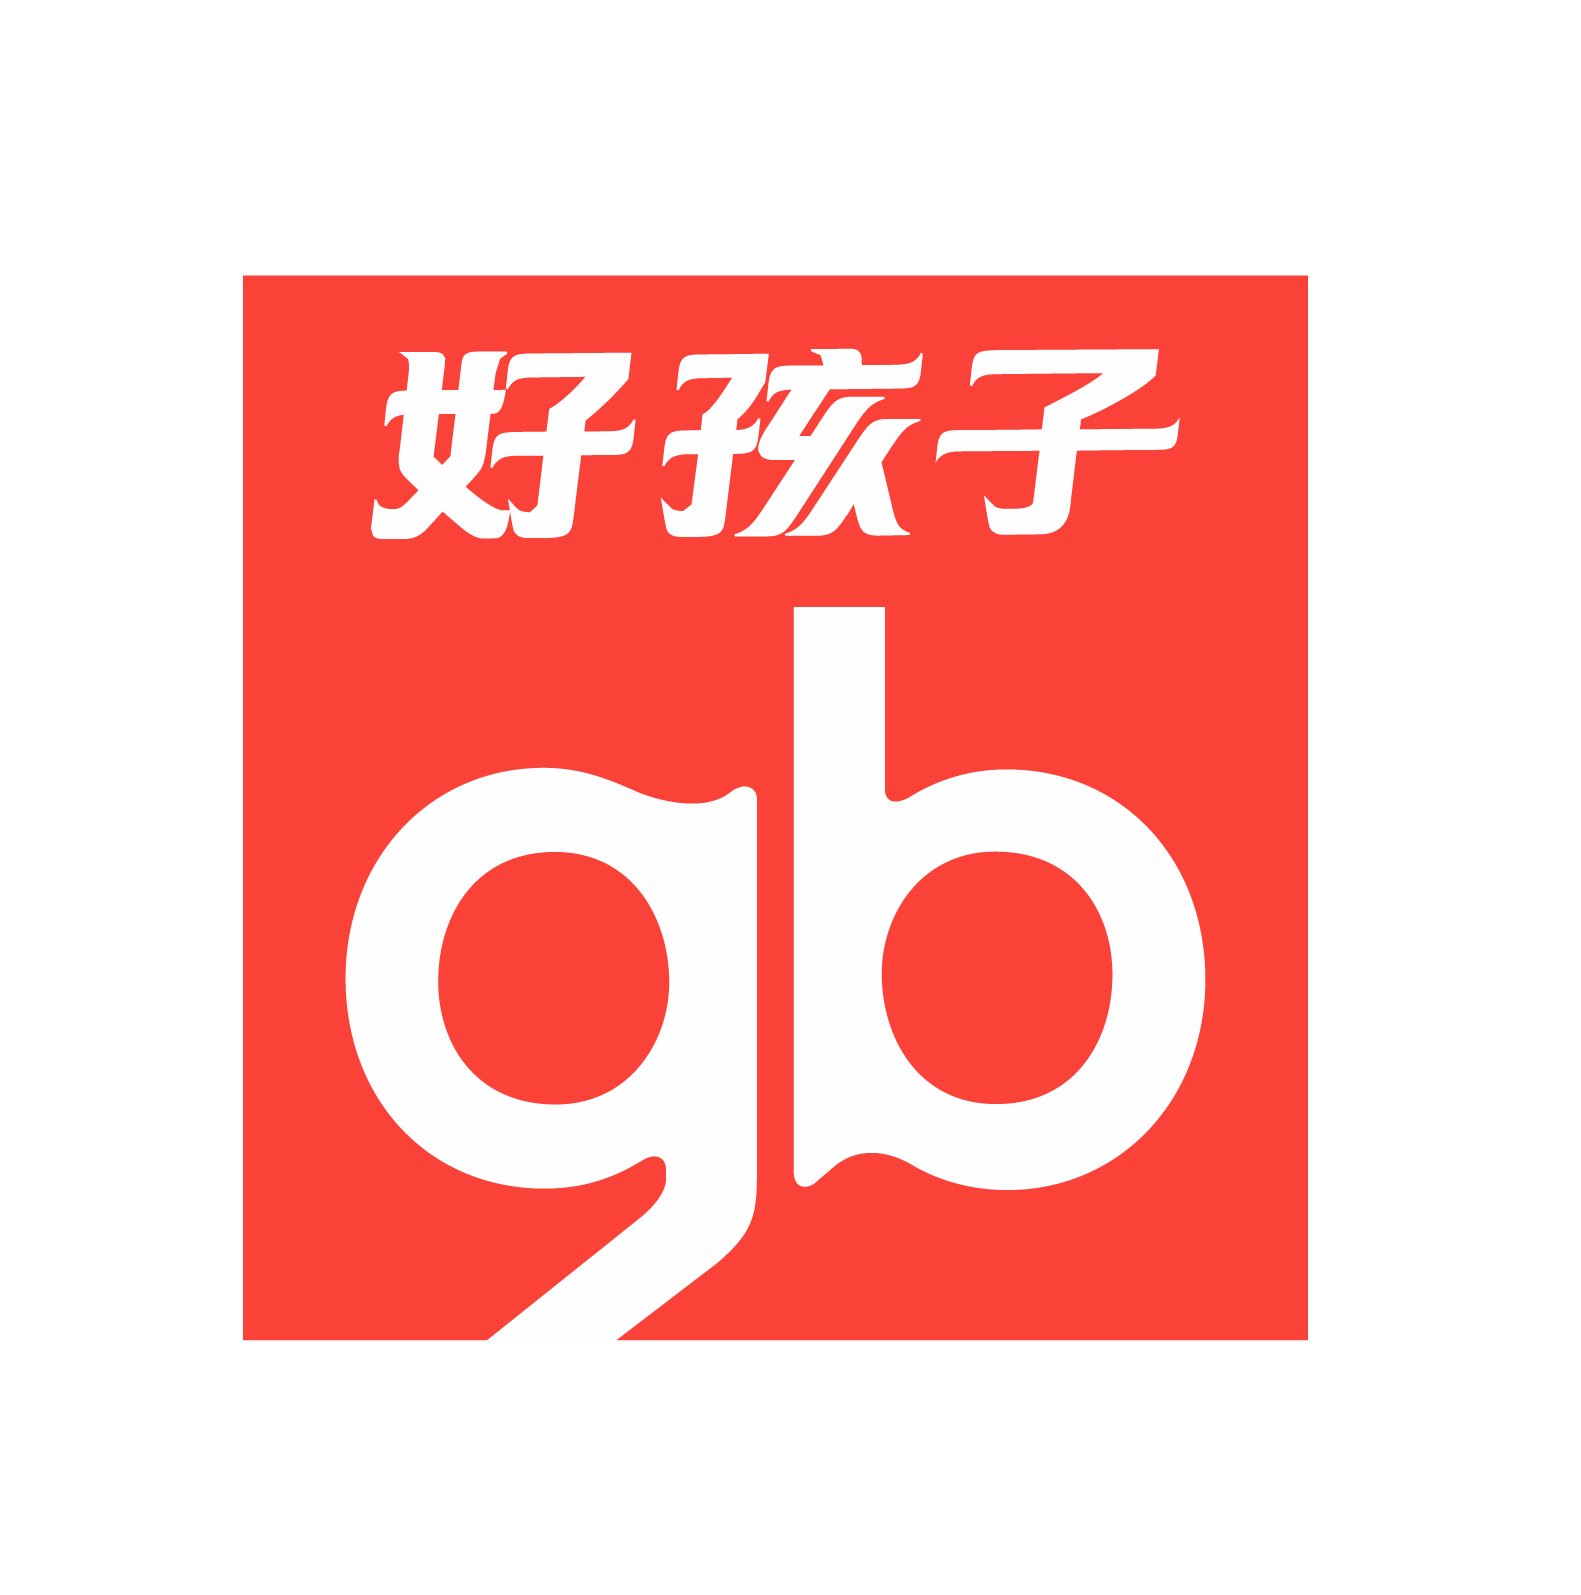 gb(兒童用品品牌)